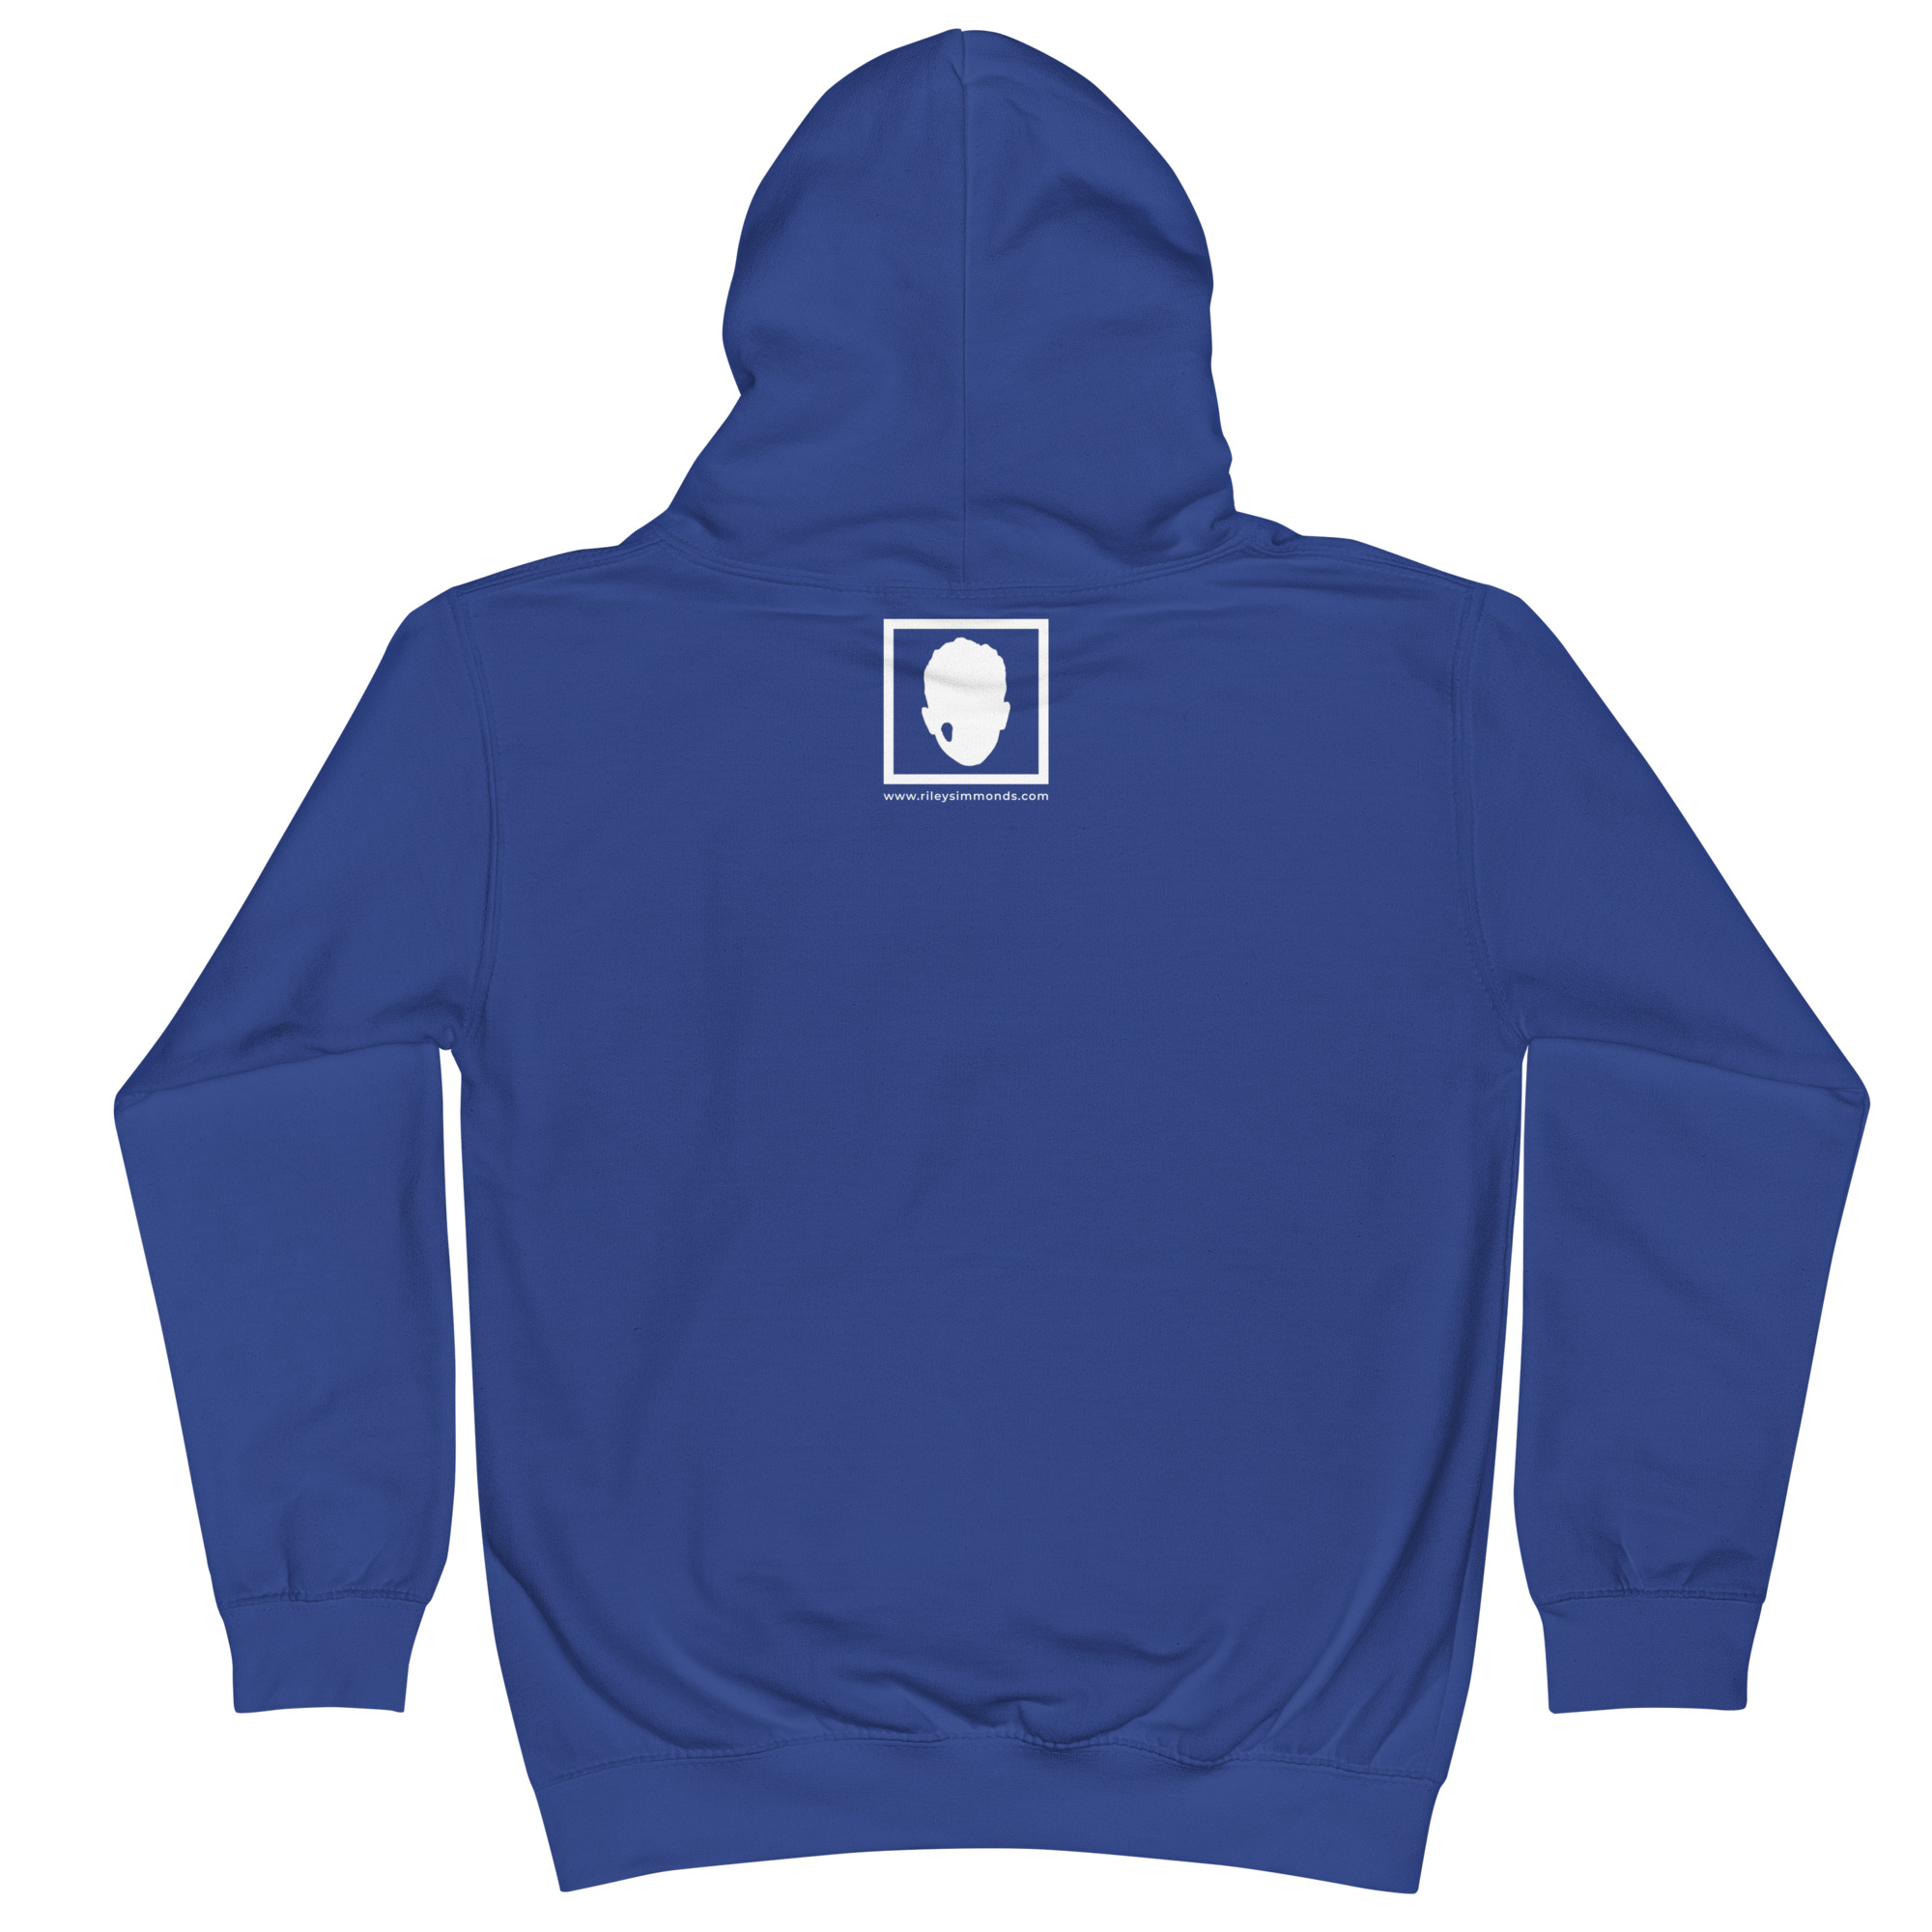 kids-hoodie-royal-blue-back-653942064fe90.jpg